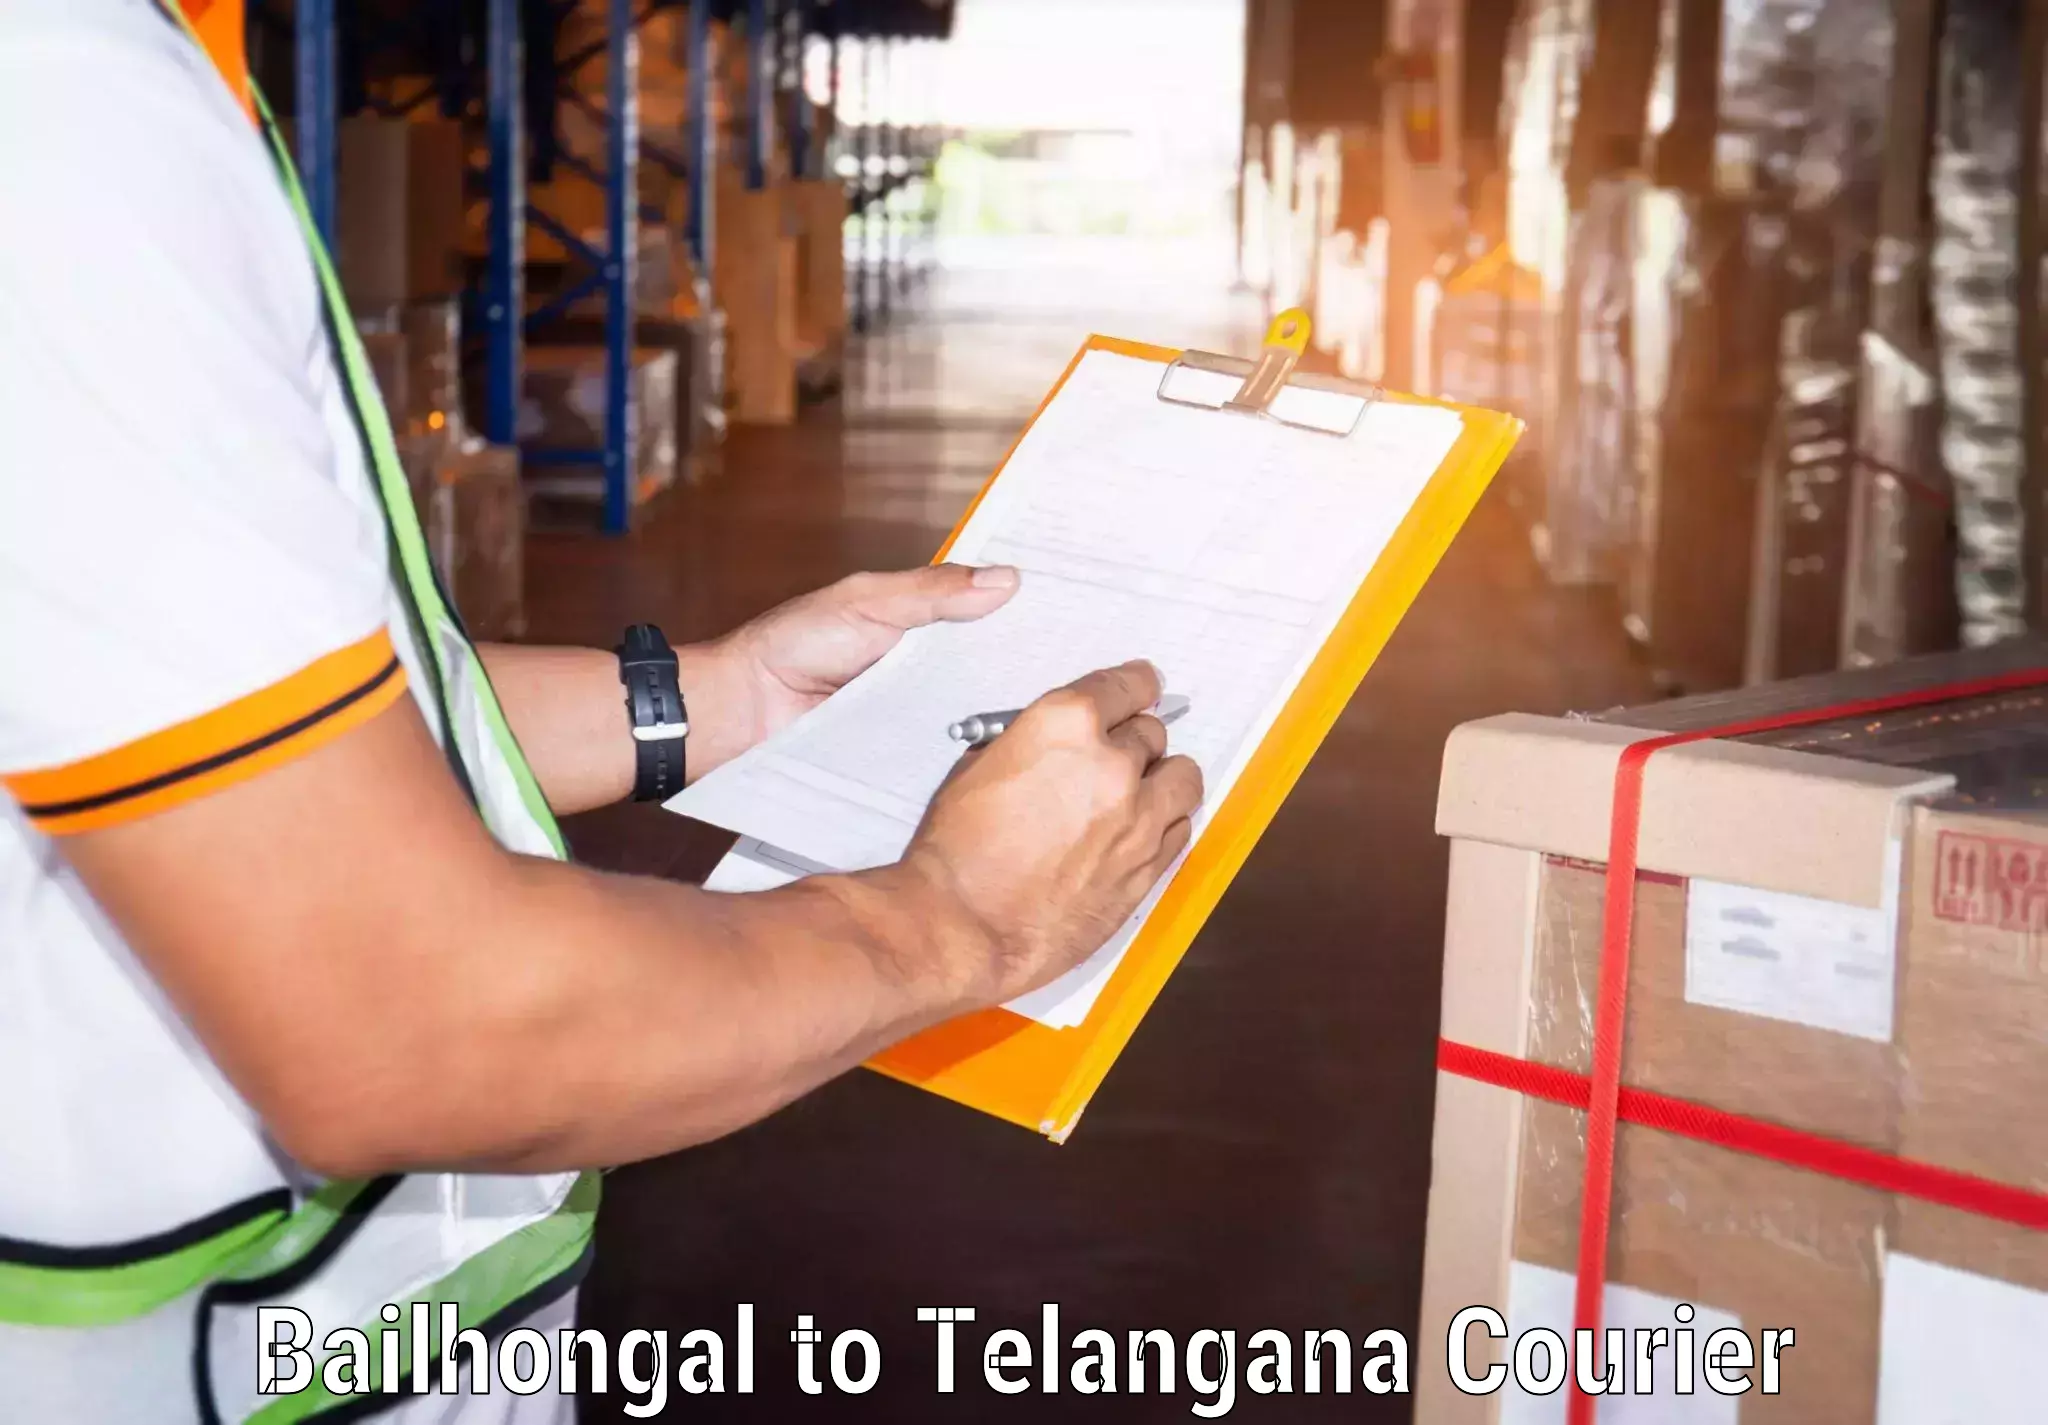 Nationwide parcel services Bailhongal to Bellal Tarafa Bodhan